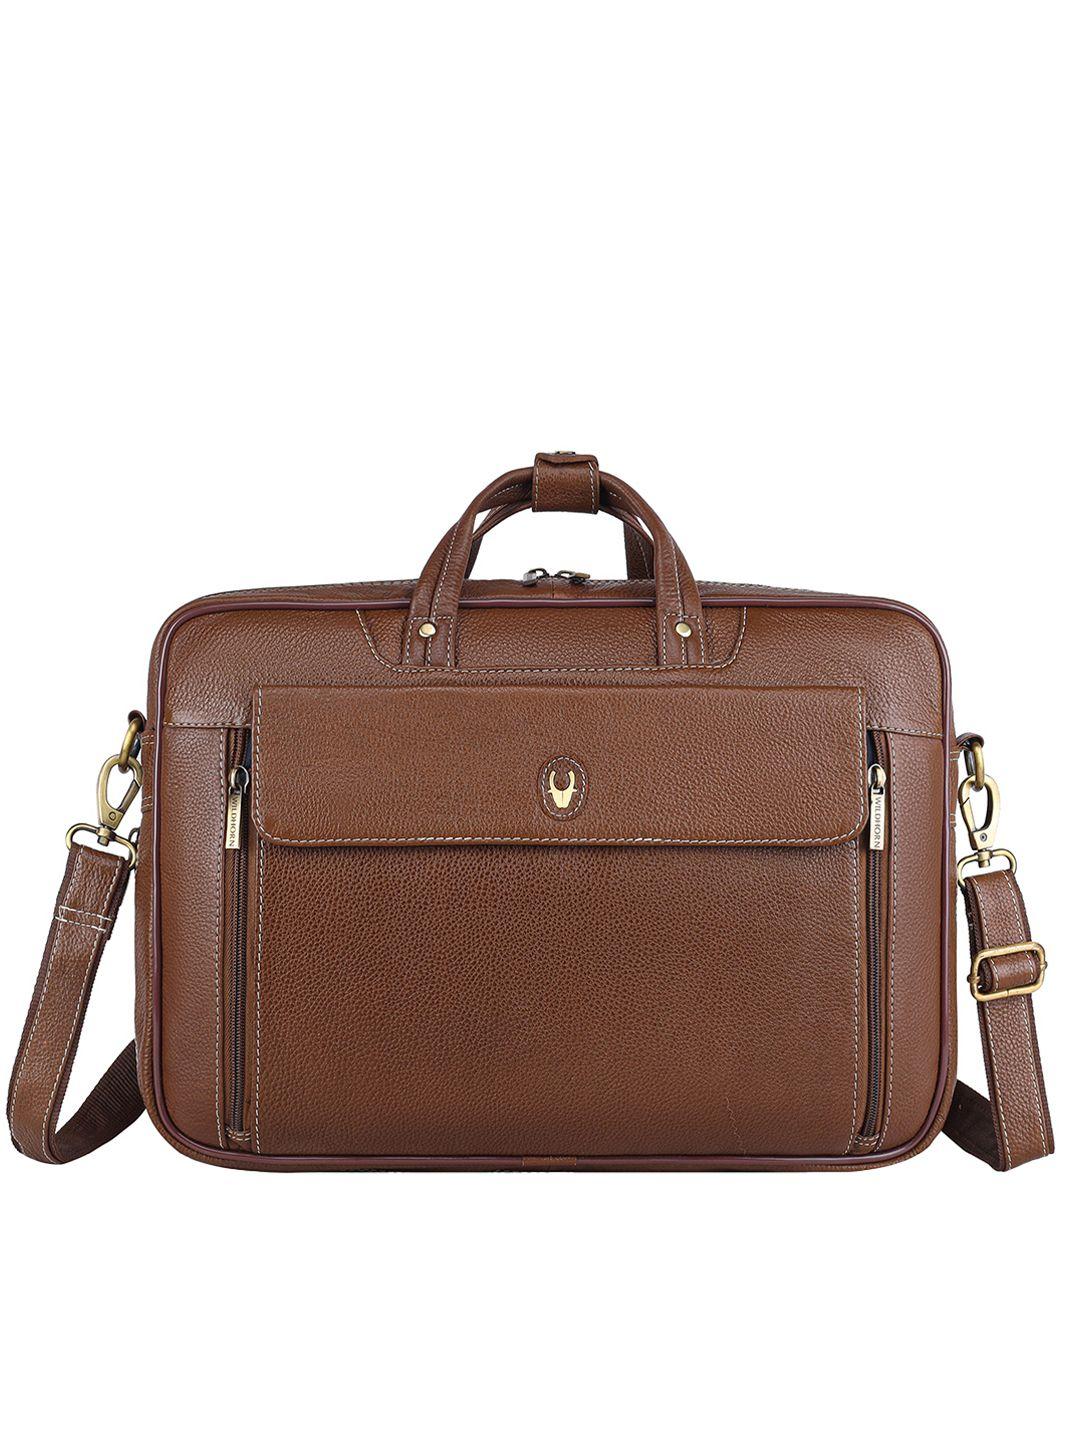 wildhorn men brown & green detachable sling bag leather laptop bag